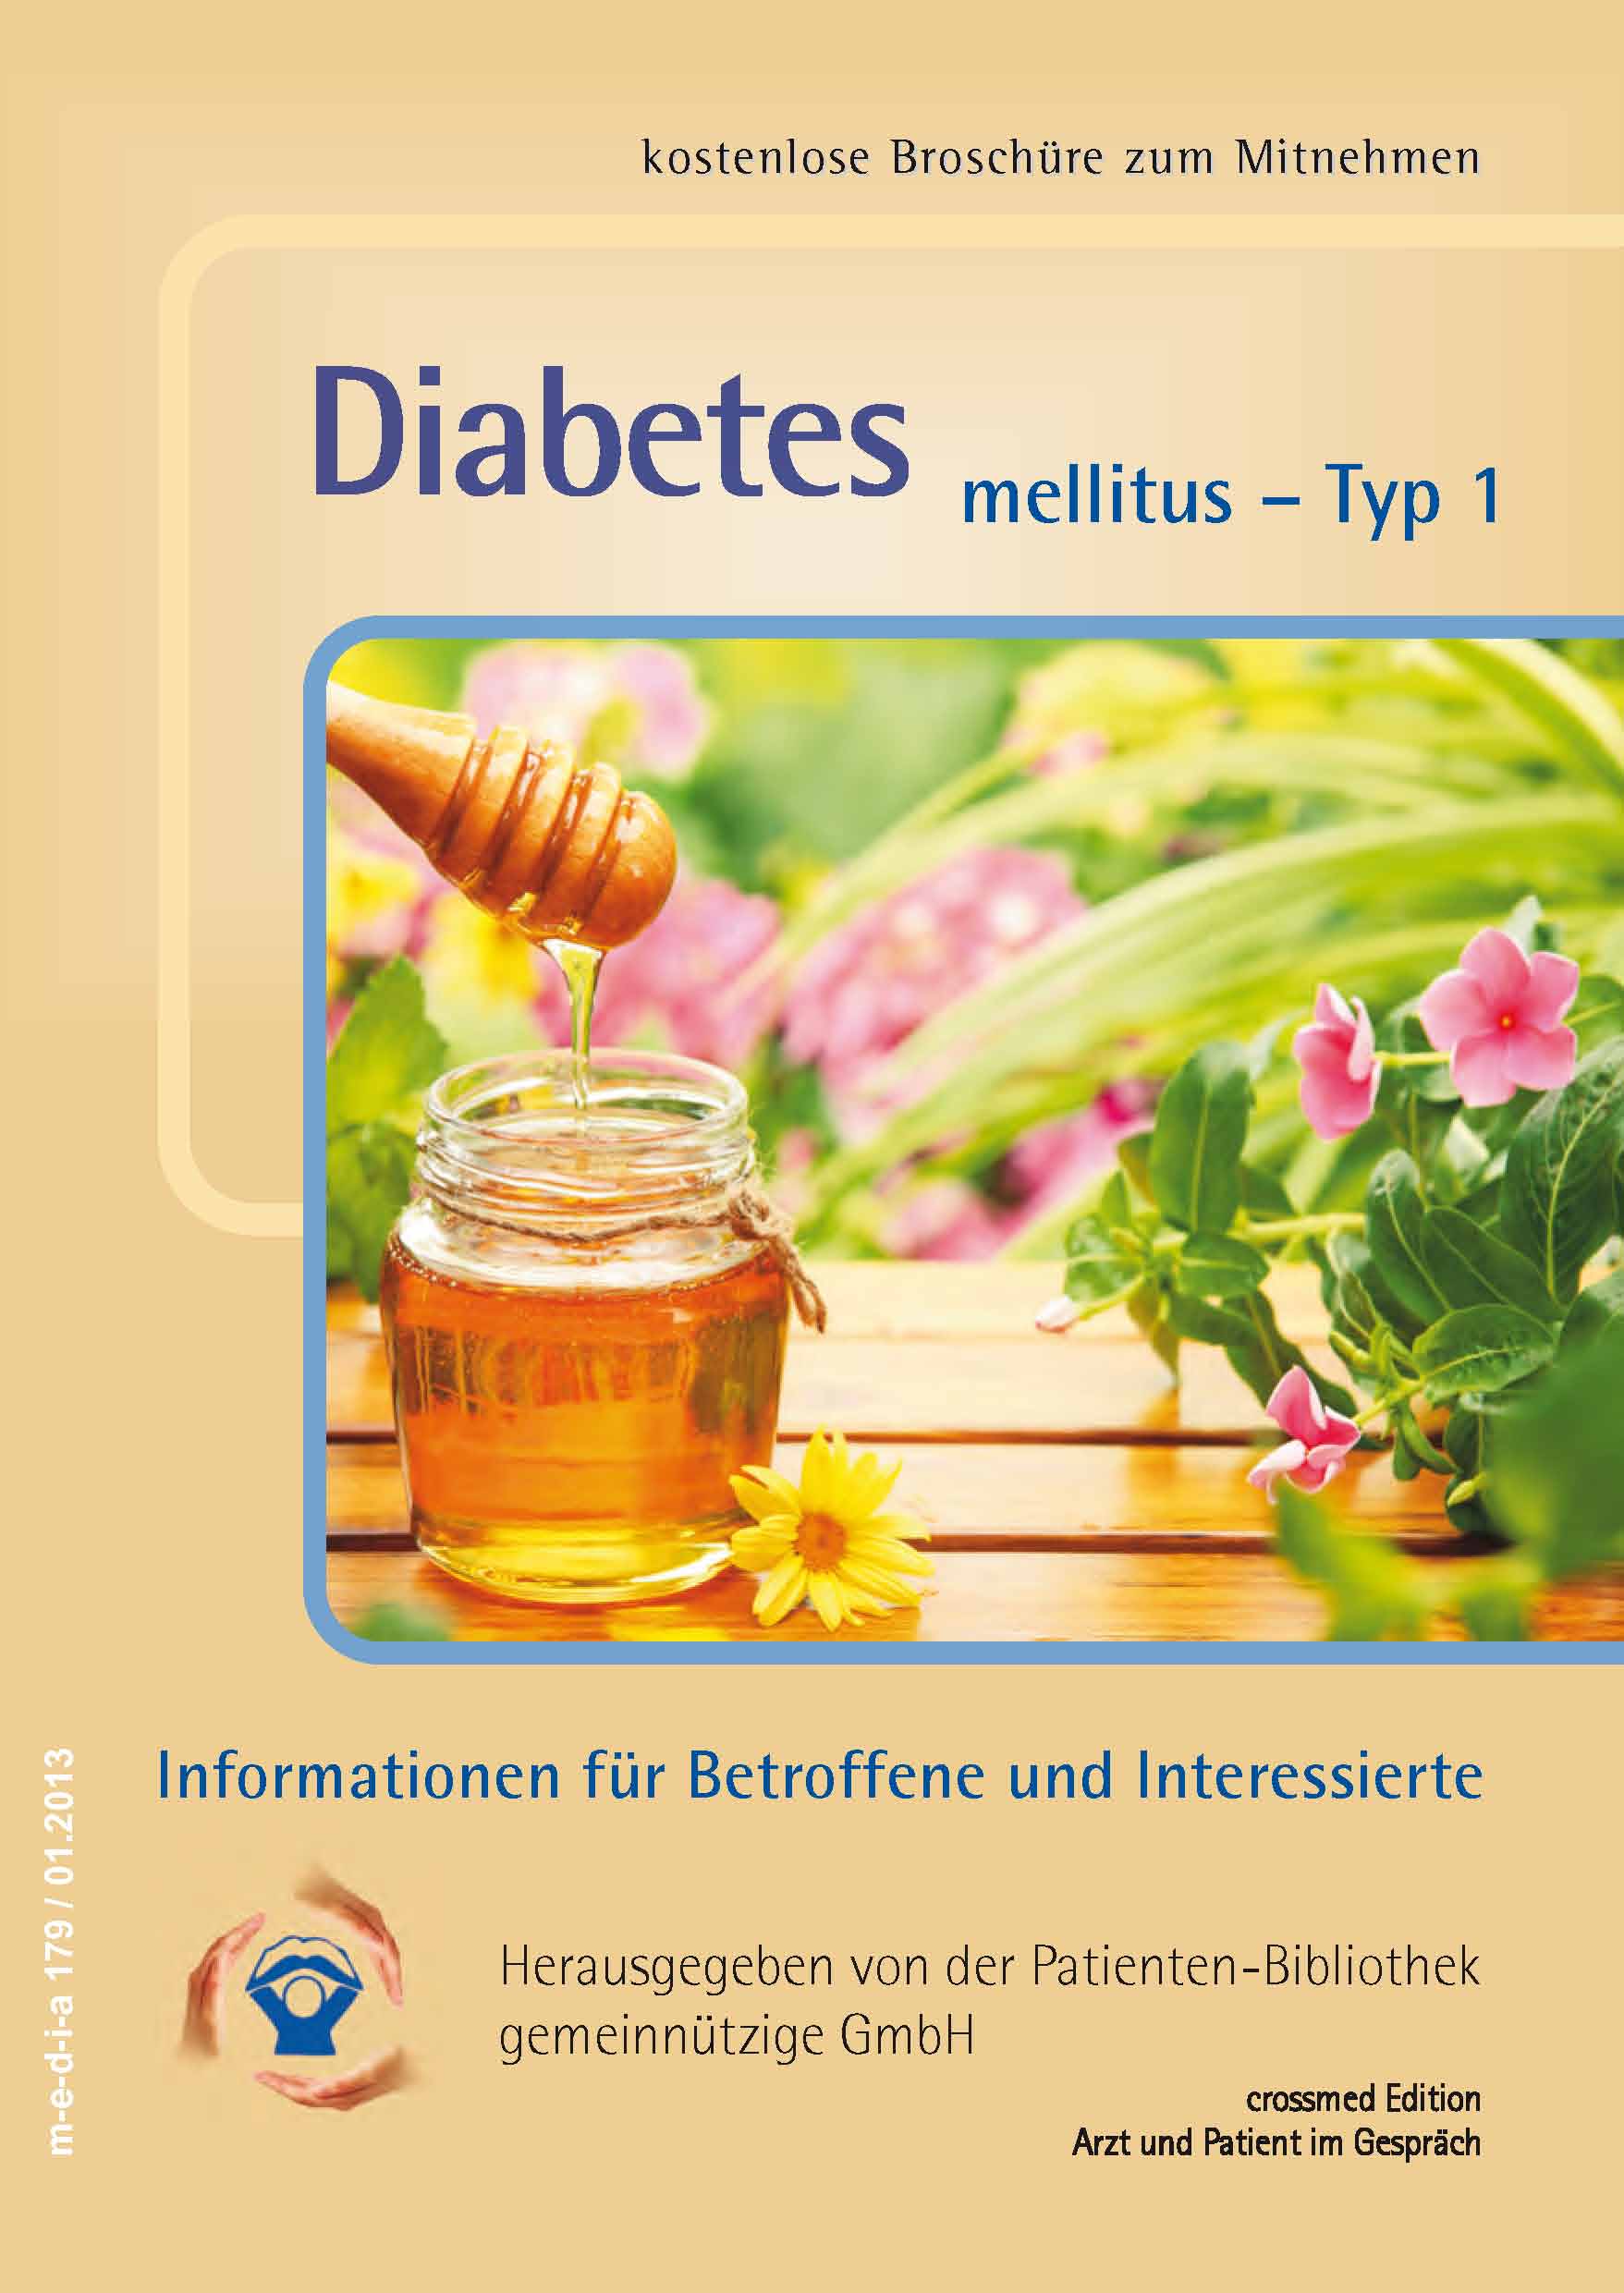 kostenlose broschüre diabetes a legjobb kezelés a cukorbetegség